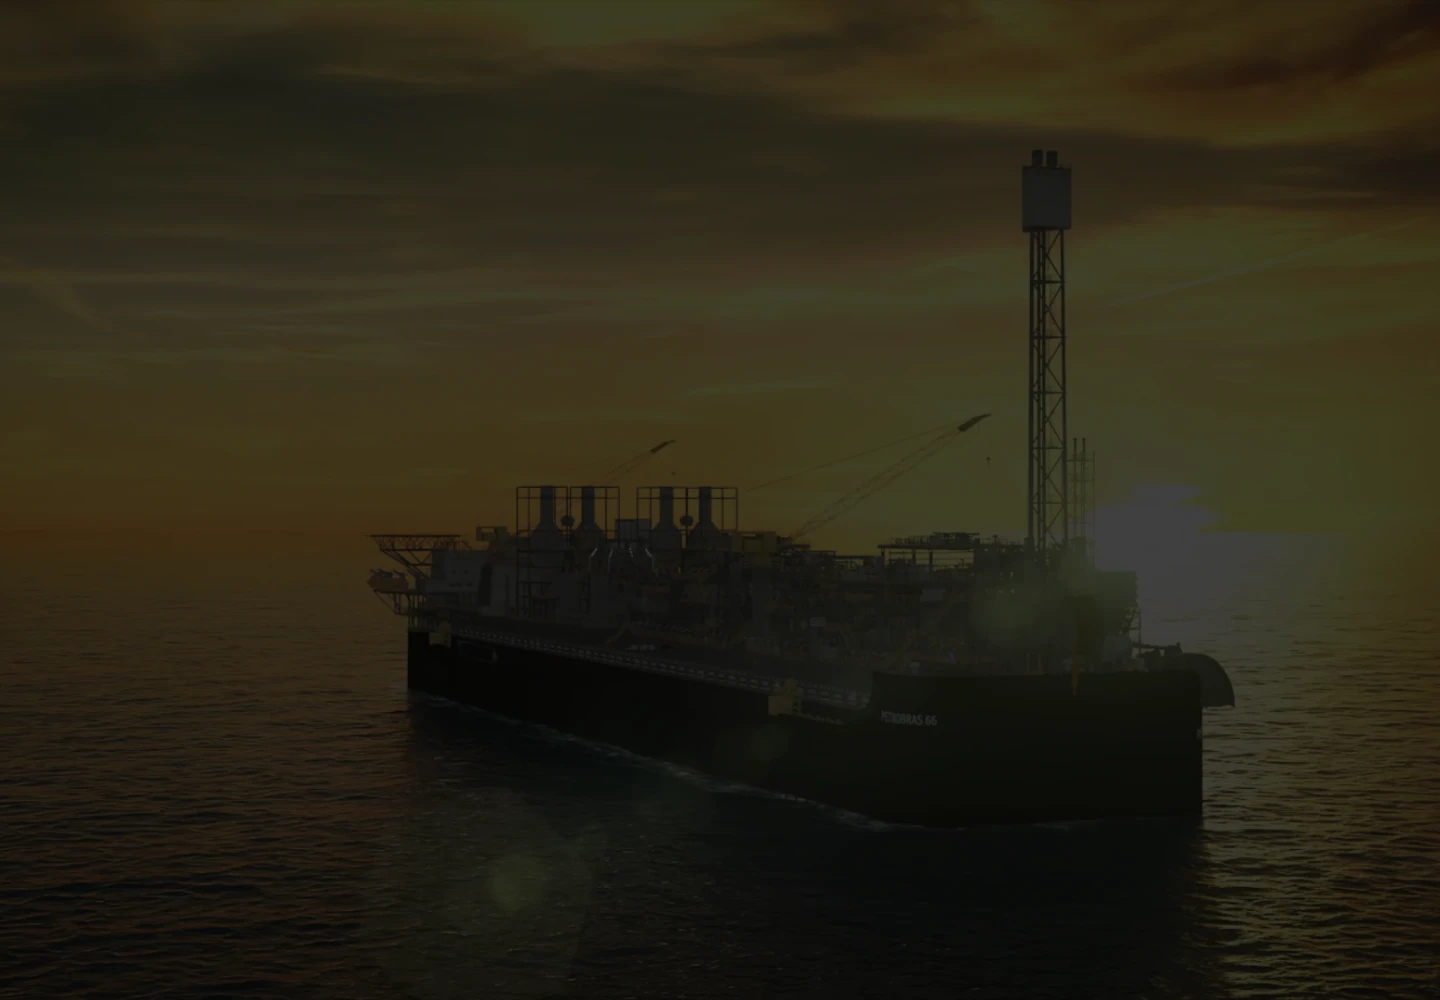 Fotografia de uma plataforma FPSO da Petrobras durante o nascer ou pôr do sol.